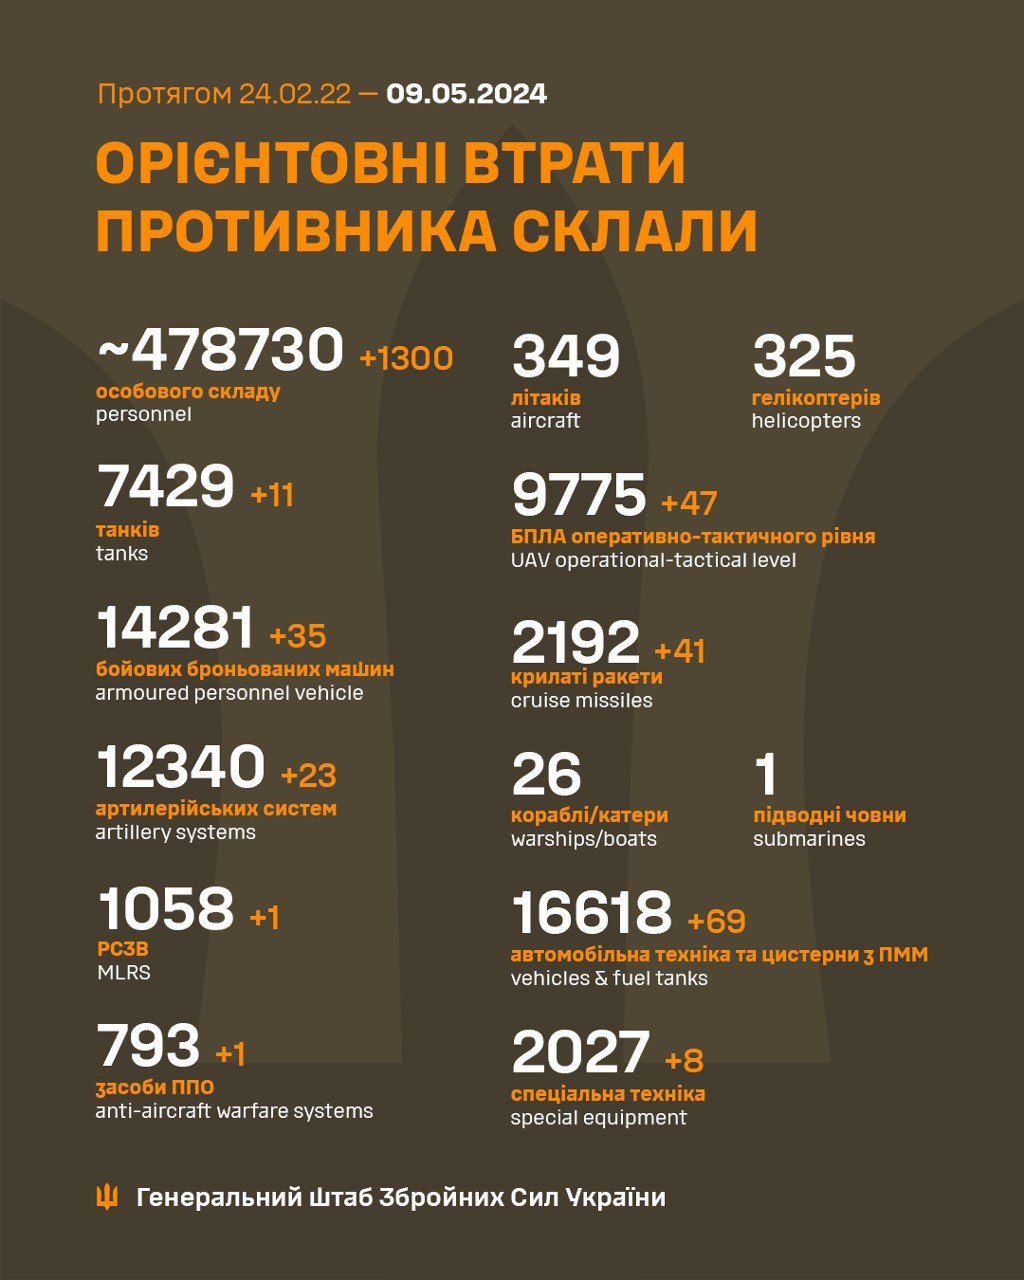 Еще 1300 оккупантов за сутки: Генштаб ВСУ обновил данные о потерях РФ в Украине